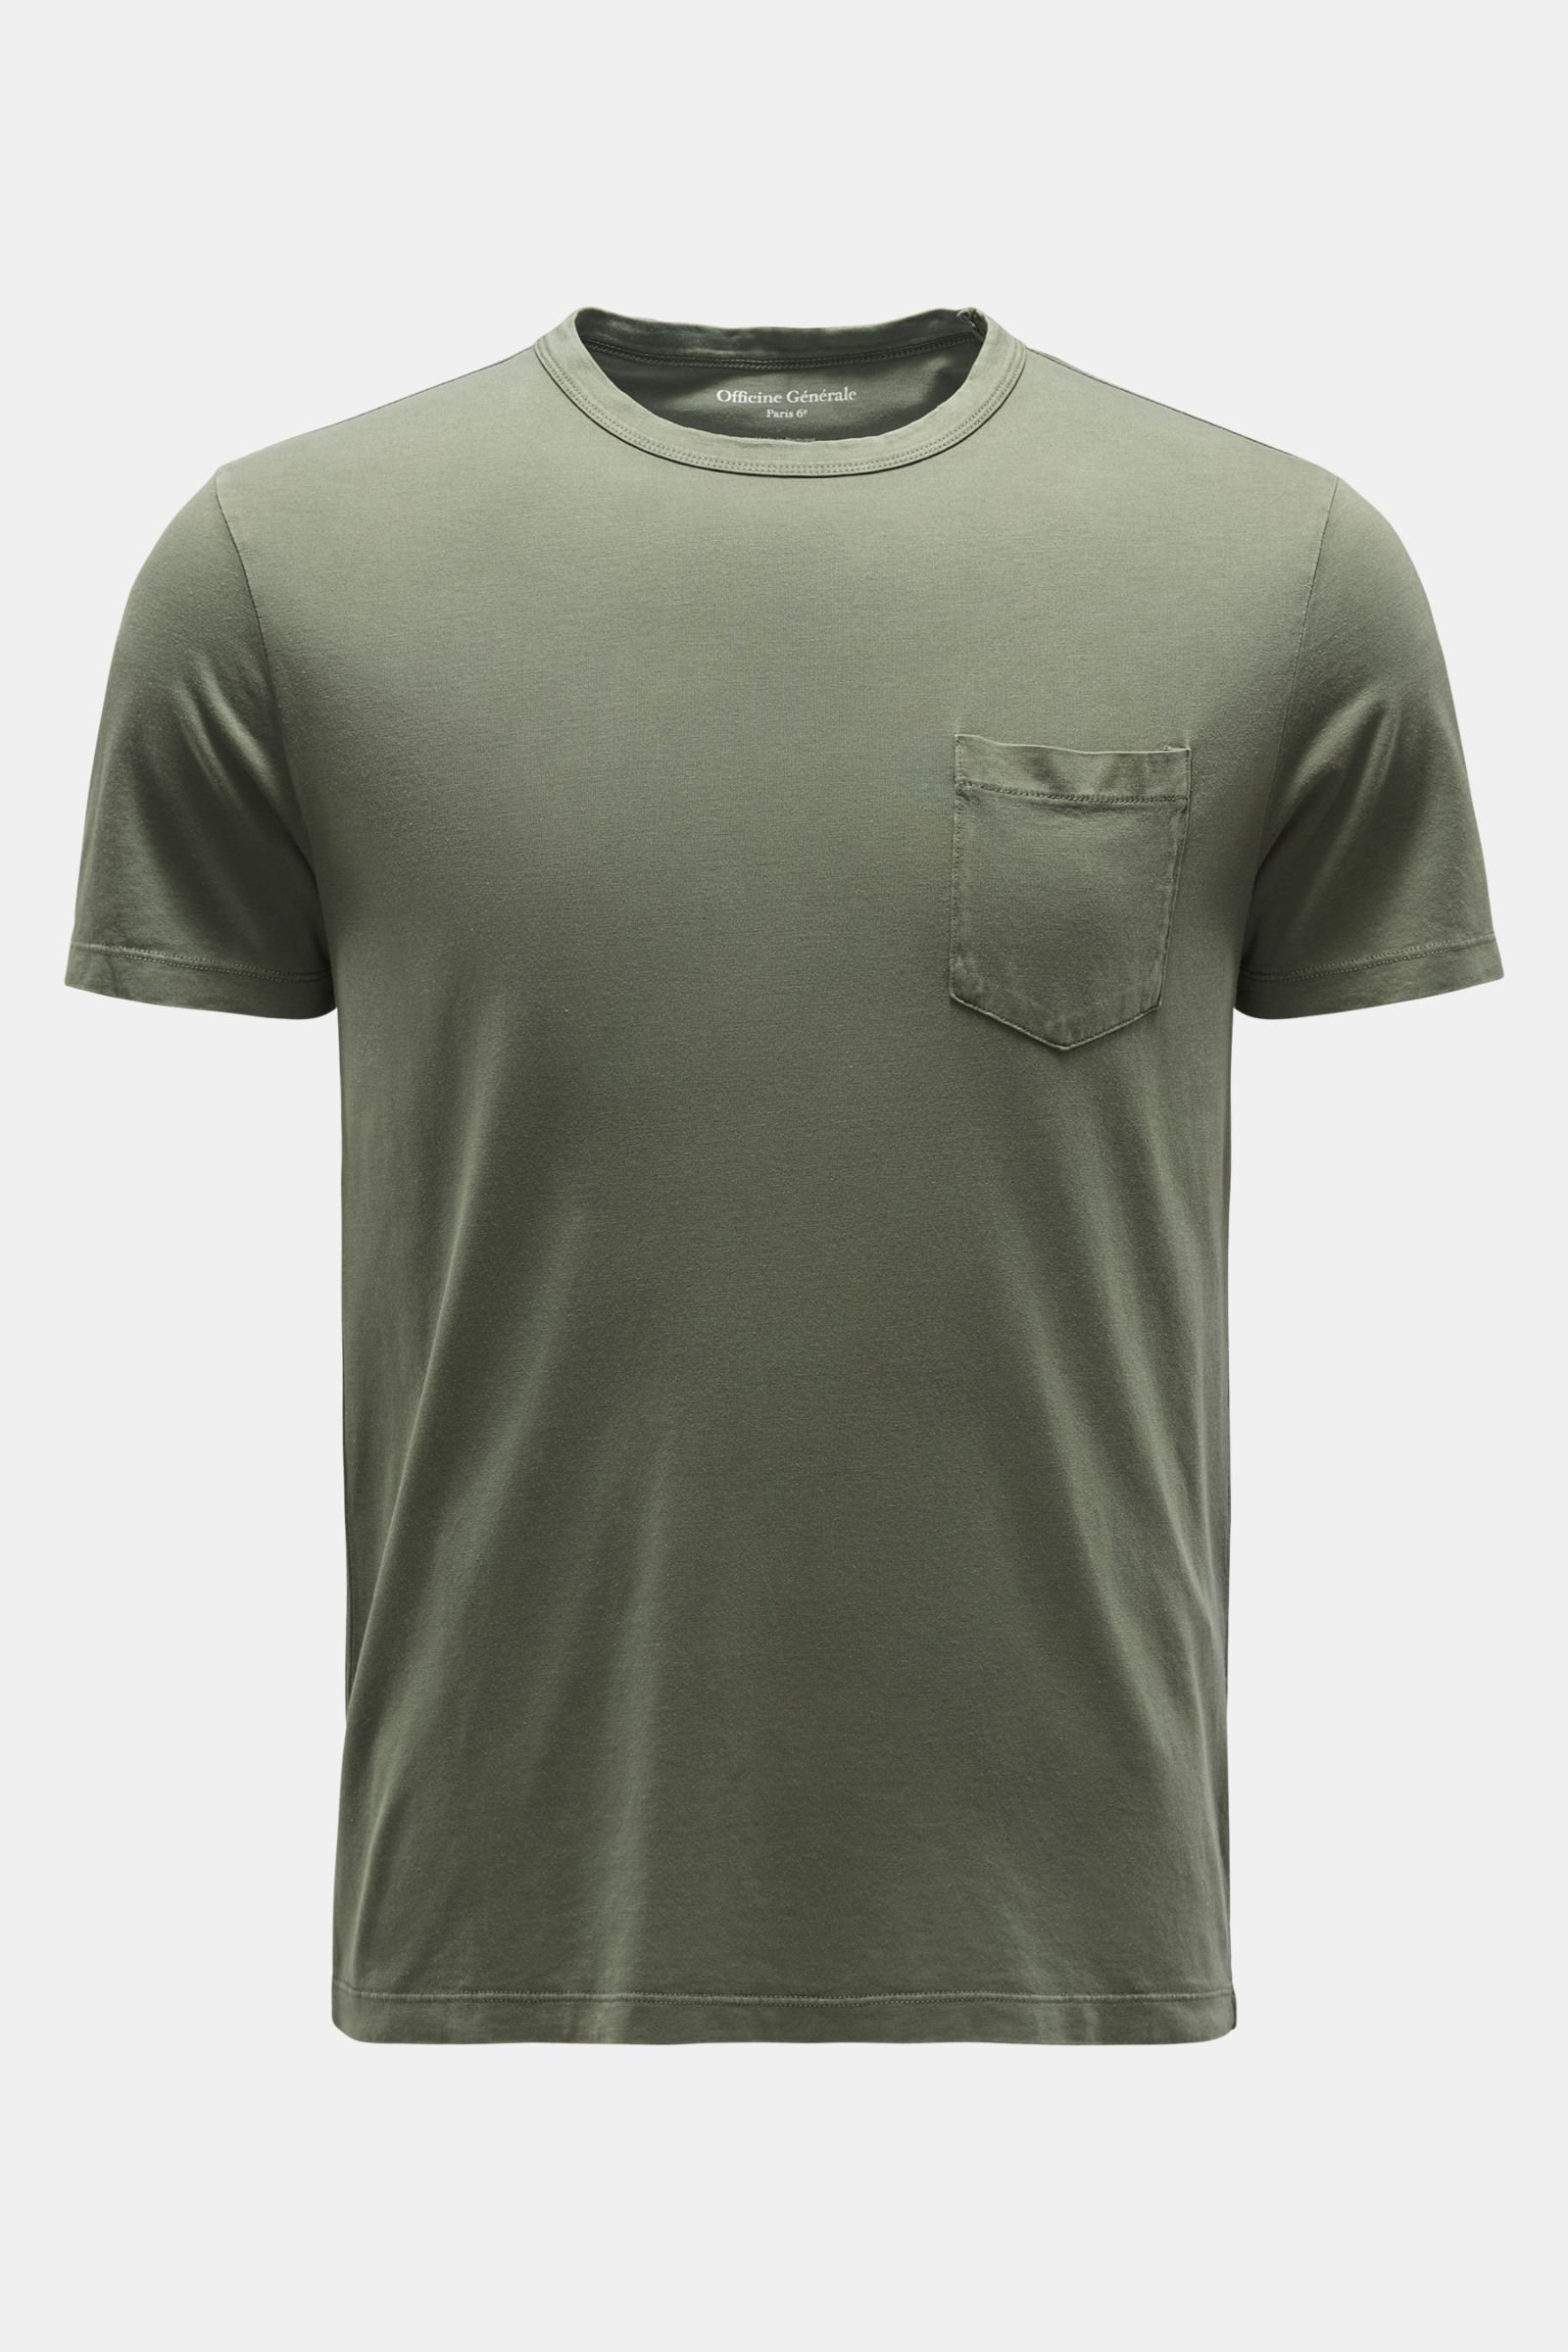 Rundhals-T-Shirt 'Tee' graugrün